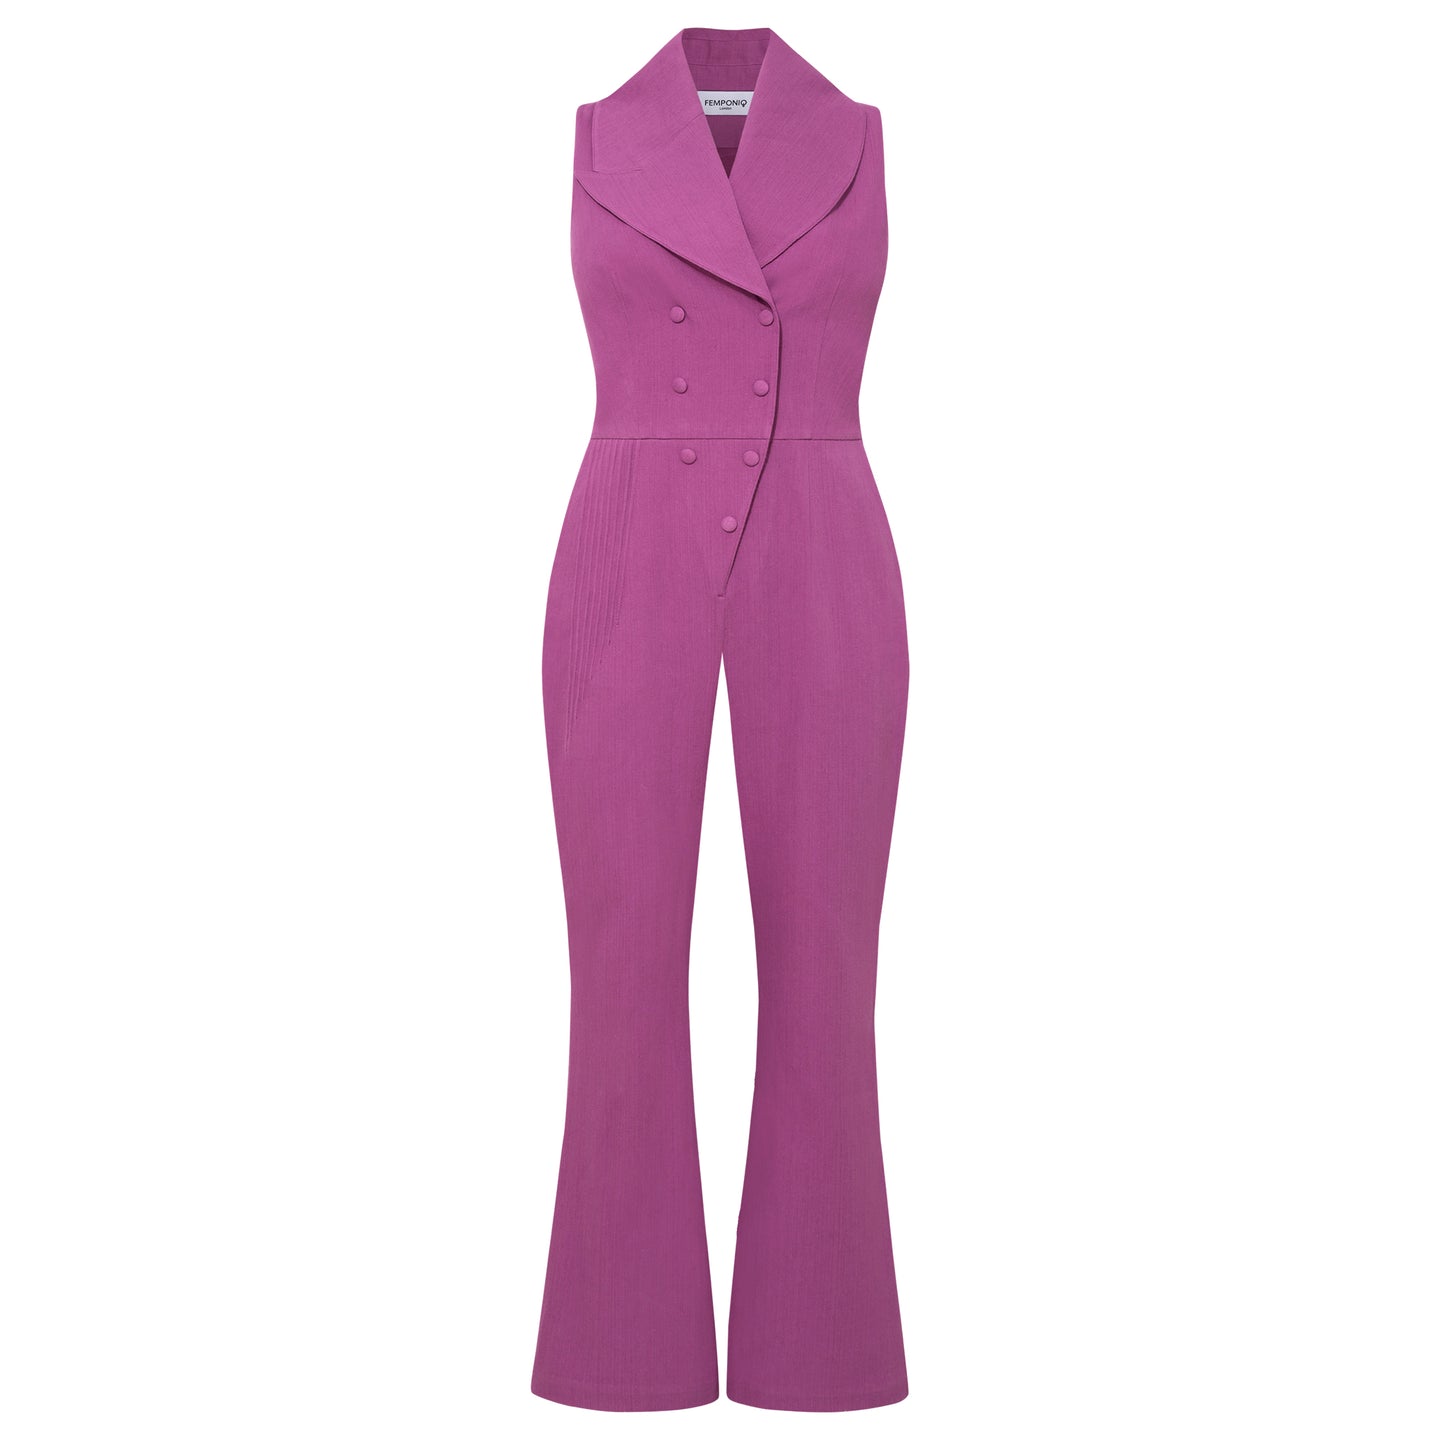 Pants & Jumpsuits, Sexy Women Tuxedo Purple Pantsuit Size 8